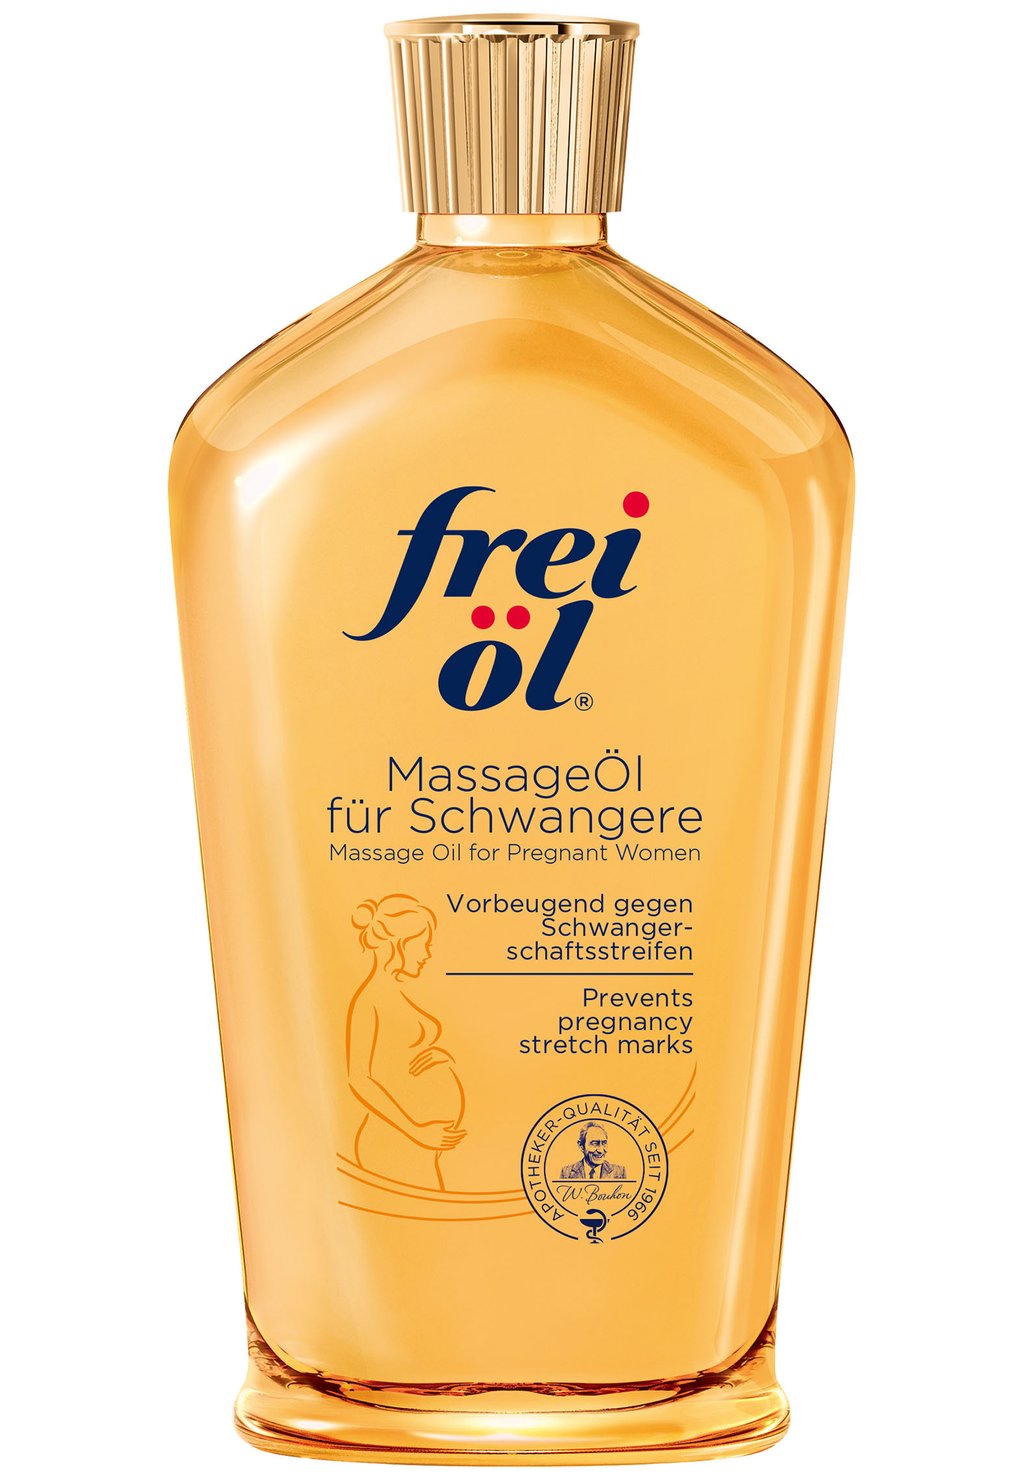 Масло для тела KÖRPERPFLEGE MASSAGEÖL FÜR SCHWANGERE Frei Öl цена и фото